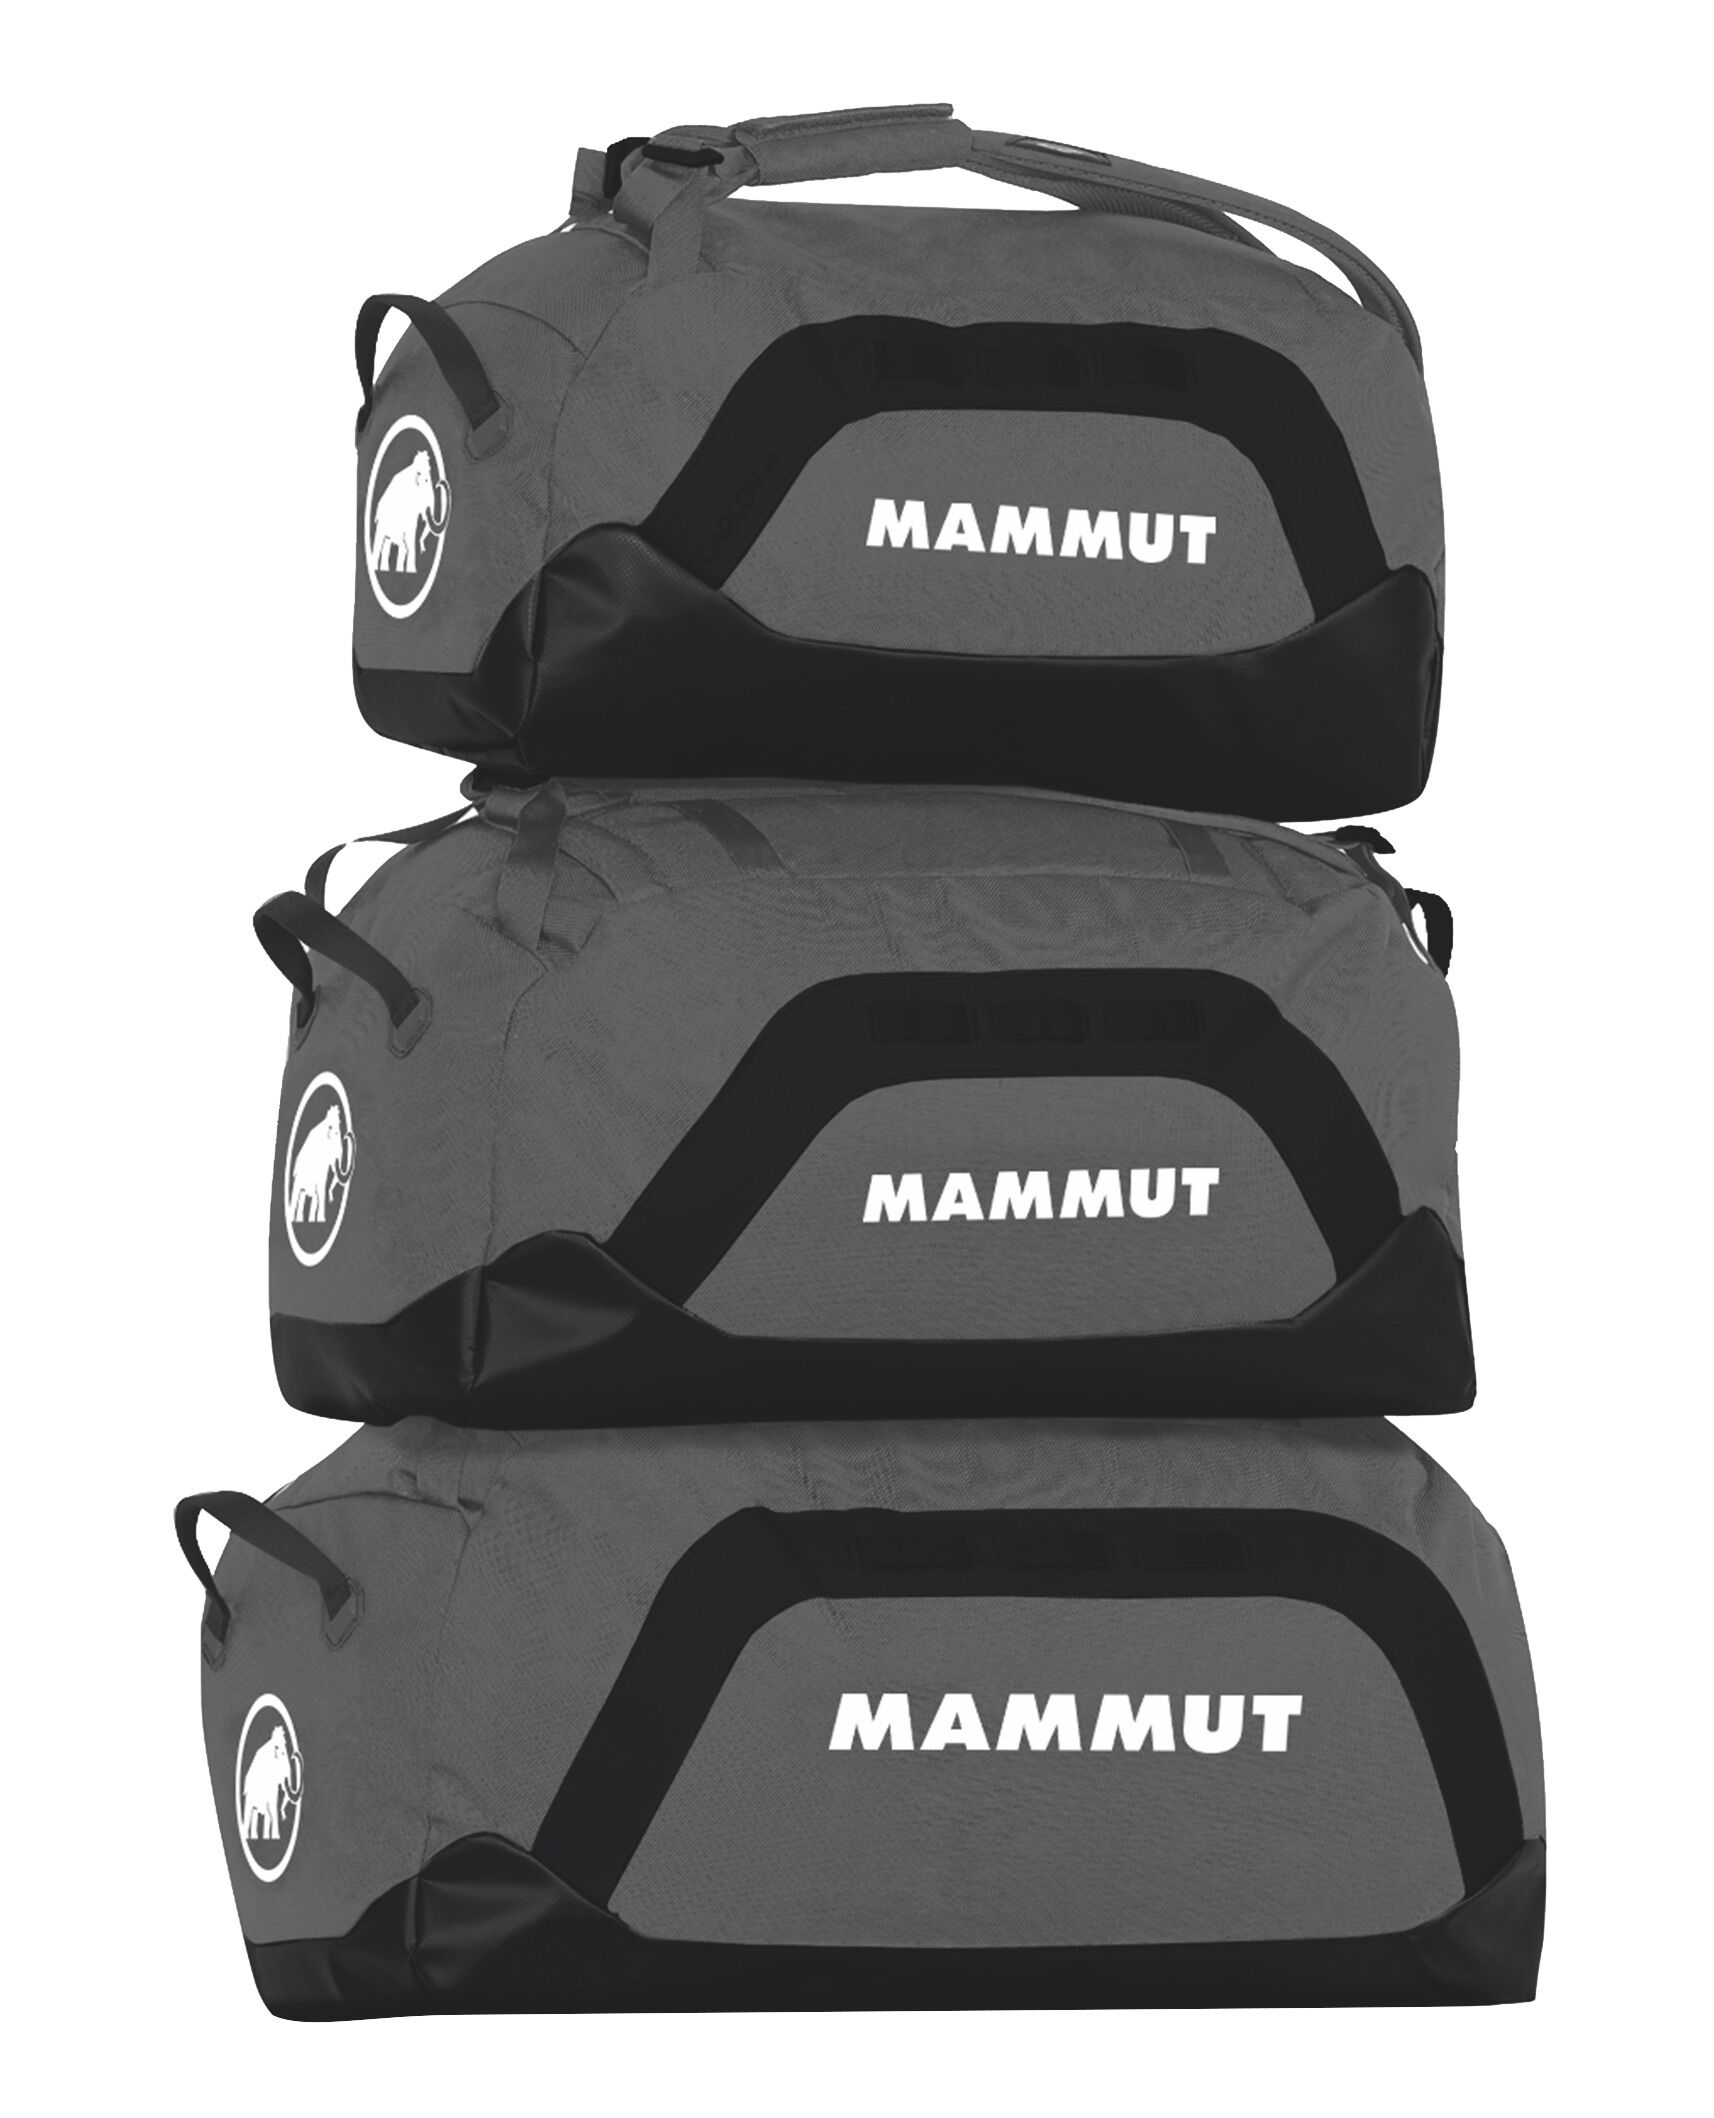 Mammut - Cargon - 40 L - Luggage